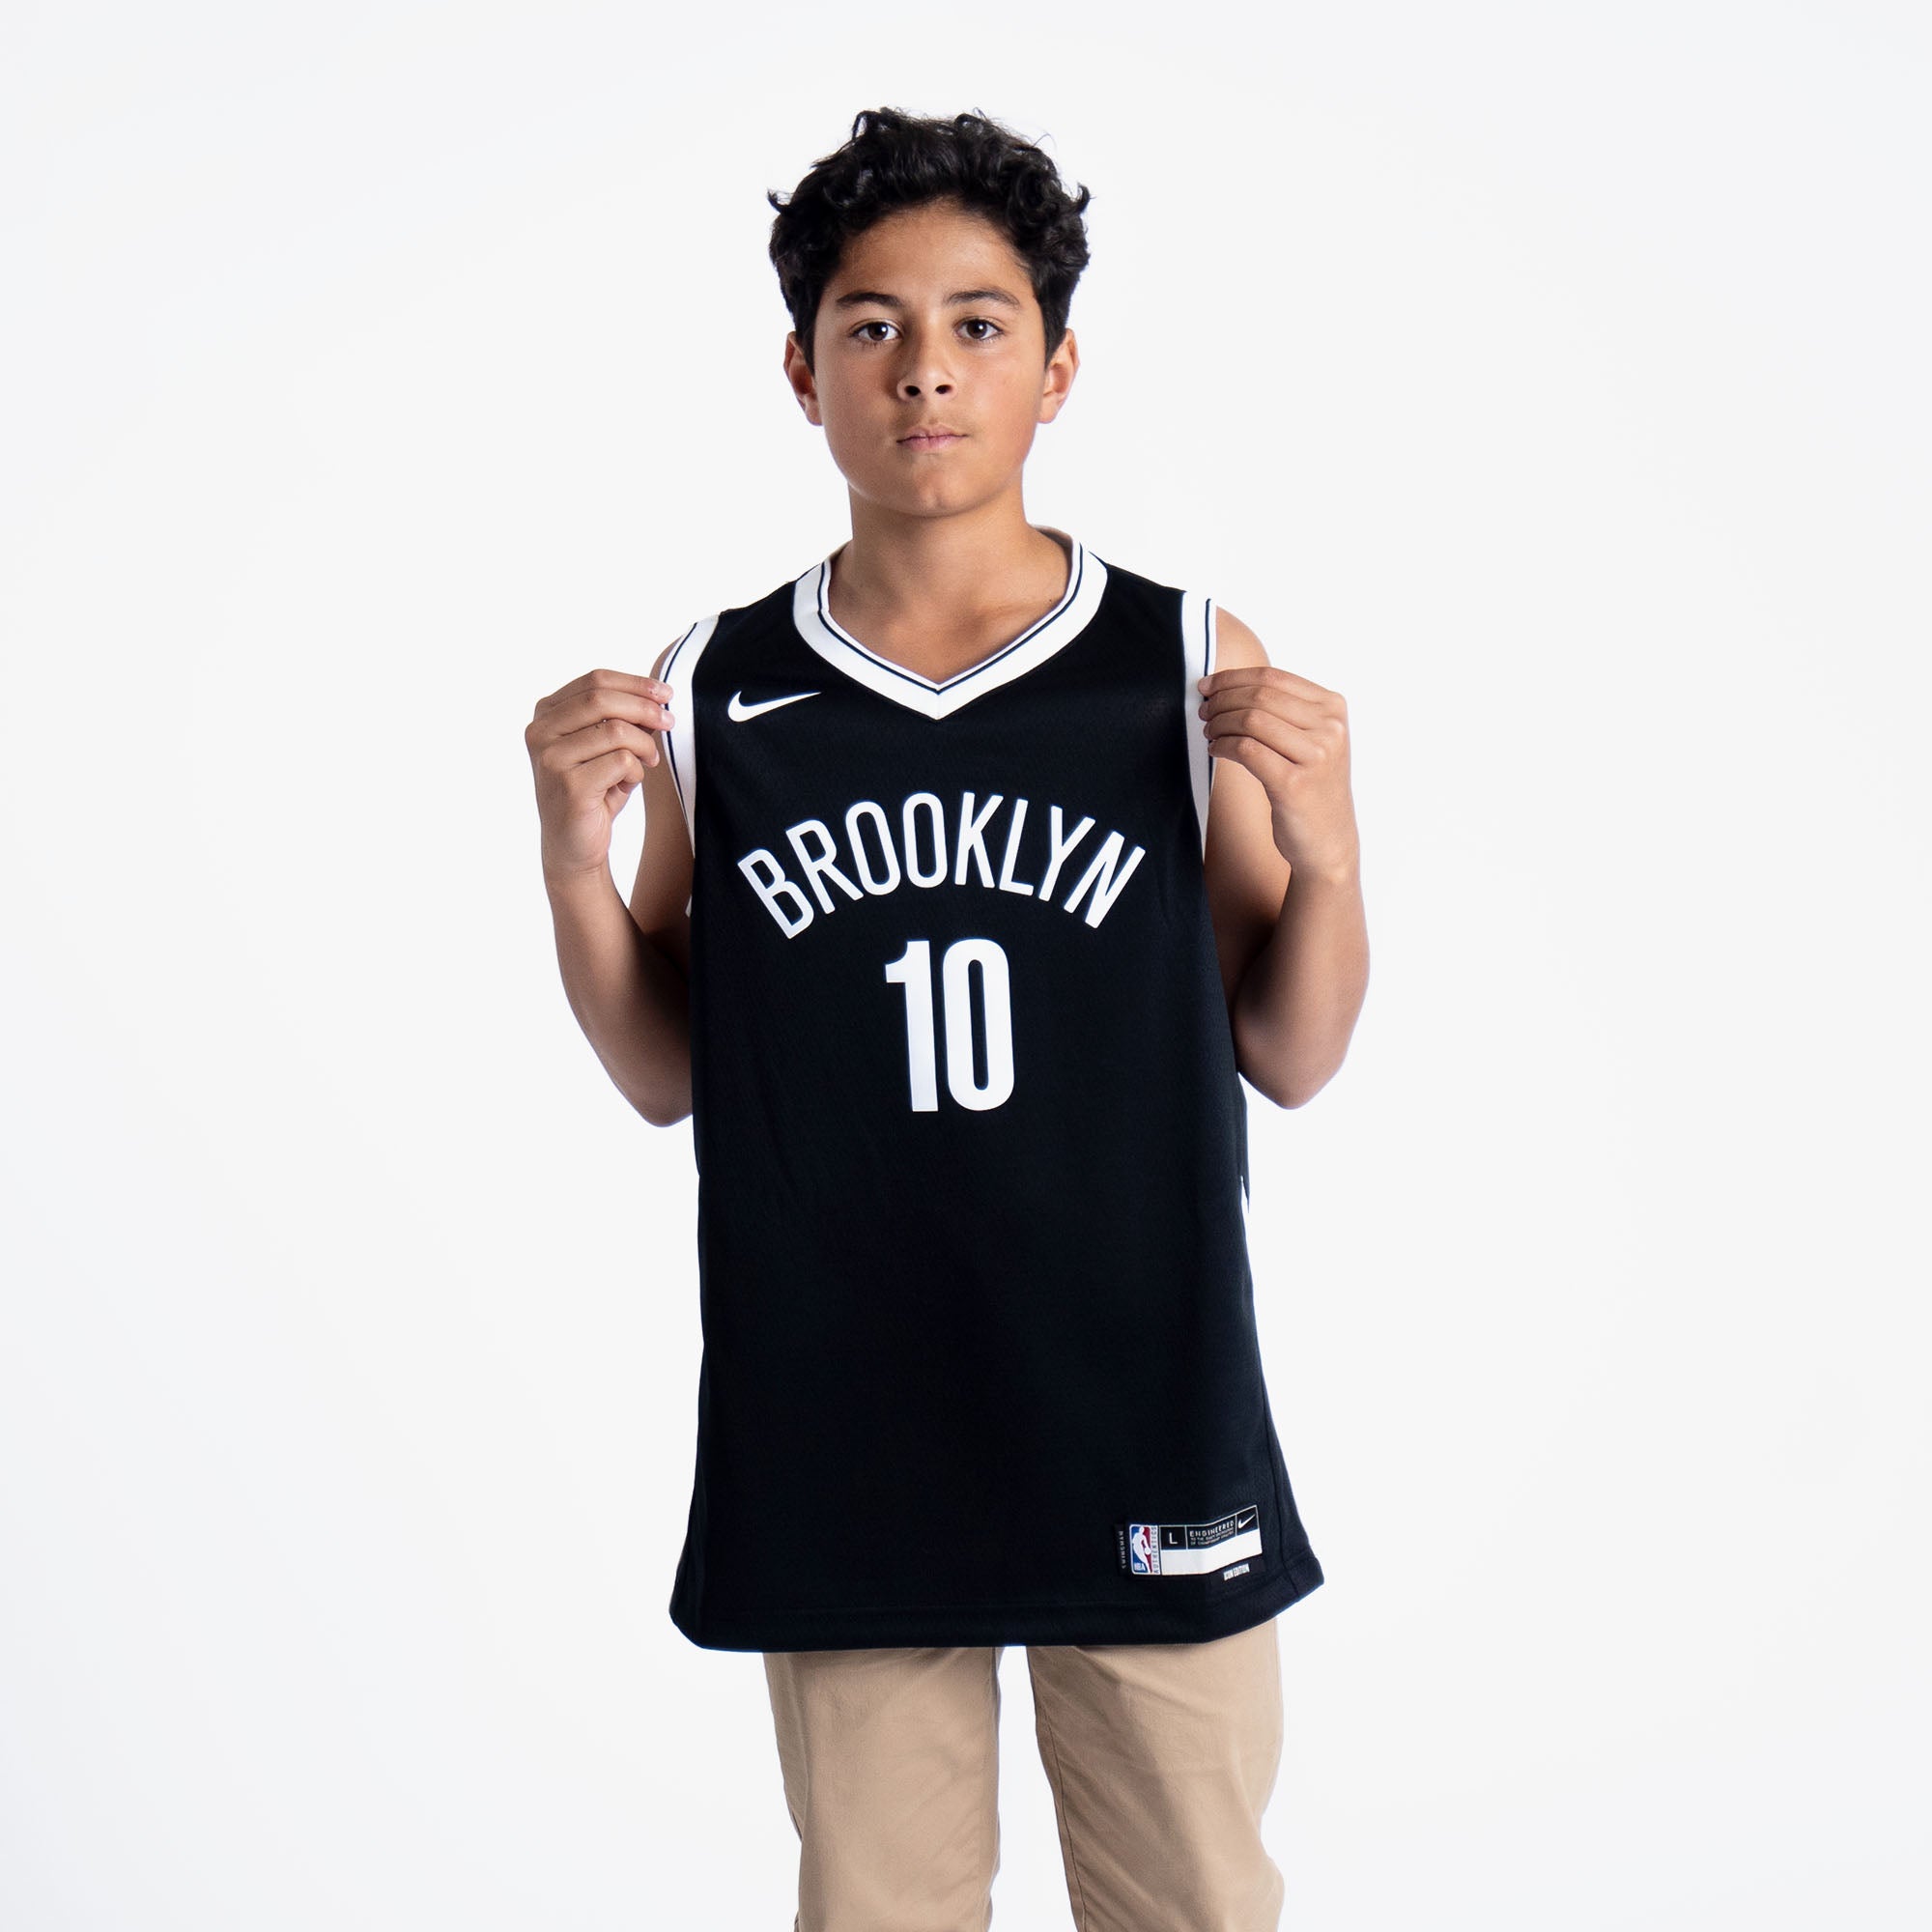 Ben Simmons Brooklyn Nets Jerseys, Ben Simmons Shirts, Ben Simmons Nets  Player Shop